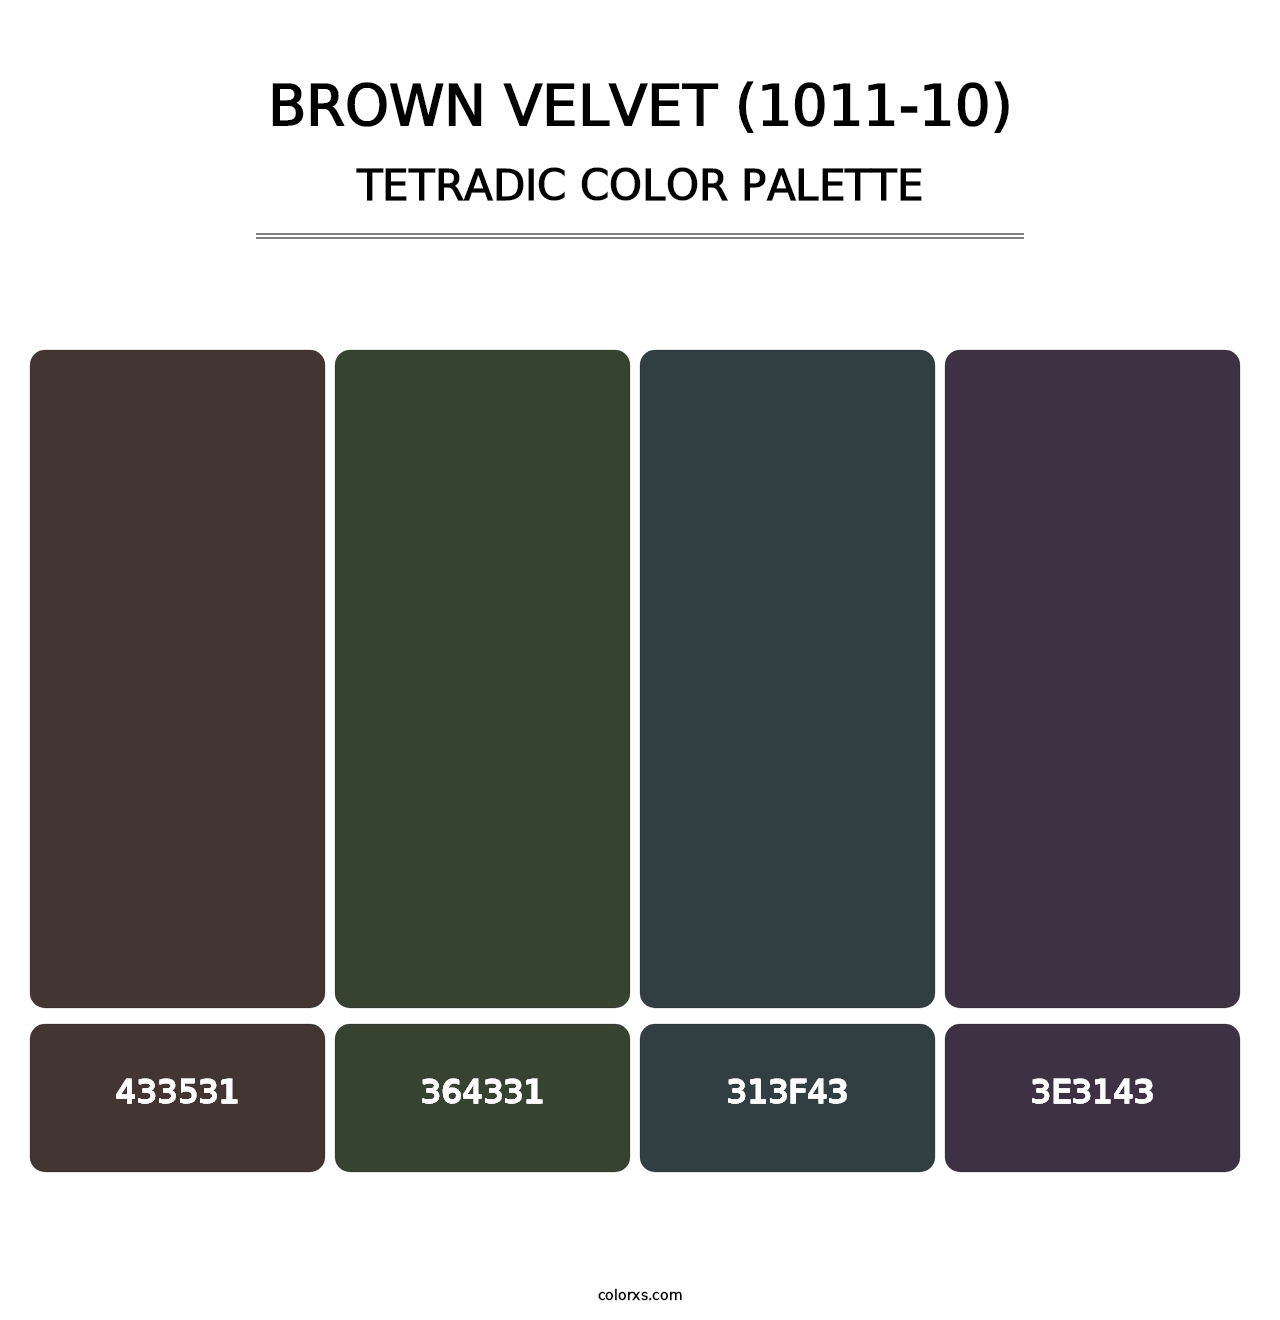 Brown Velvet (1011-10) - Tetradic Color Palette